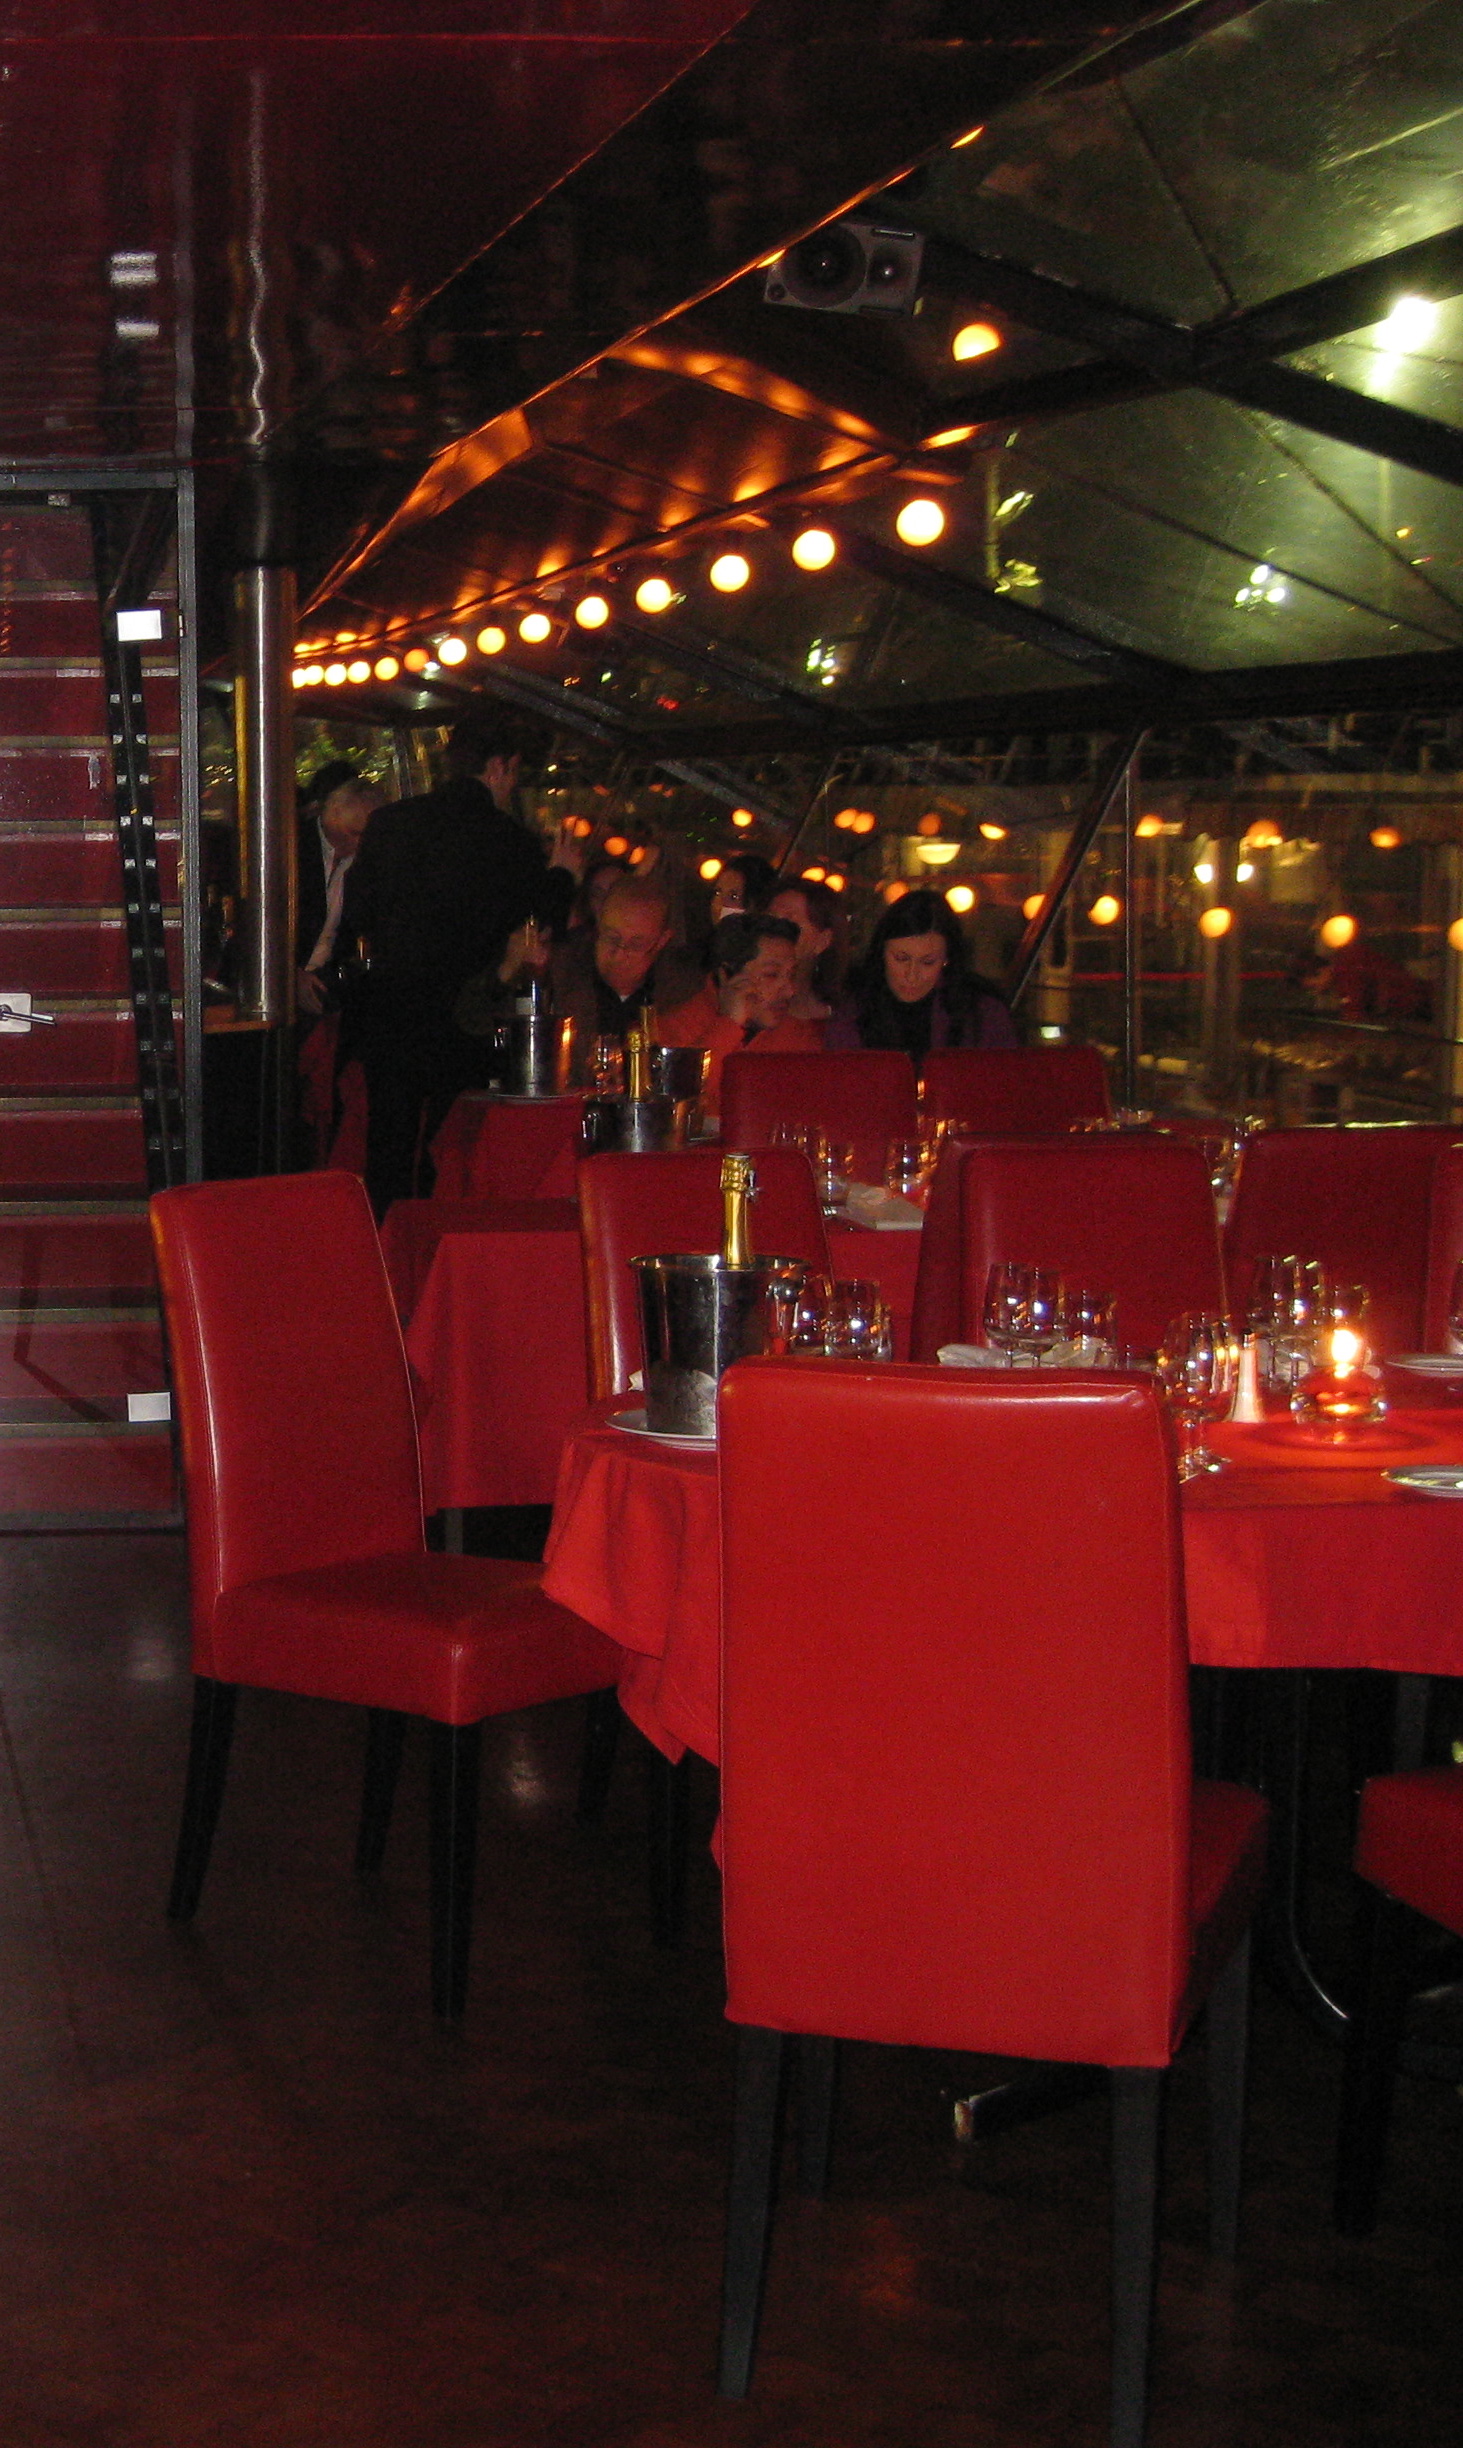 Bateau Mouche dinner cruise in Paris